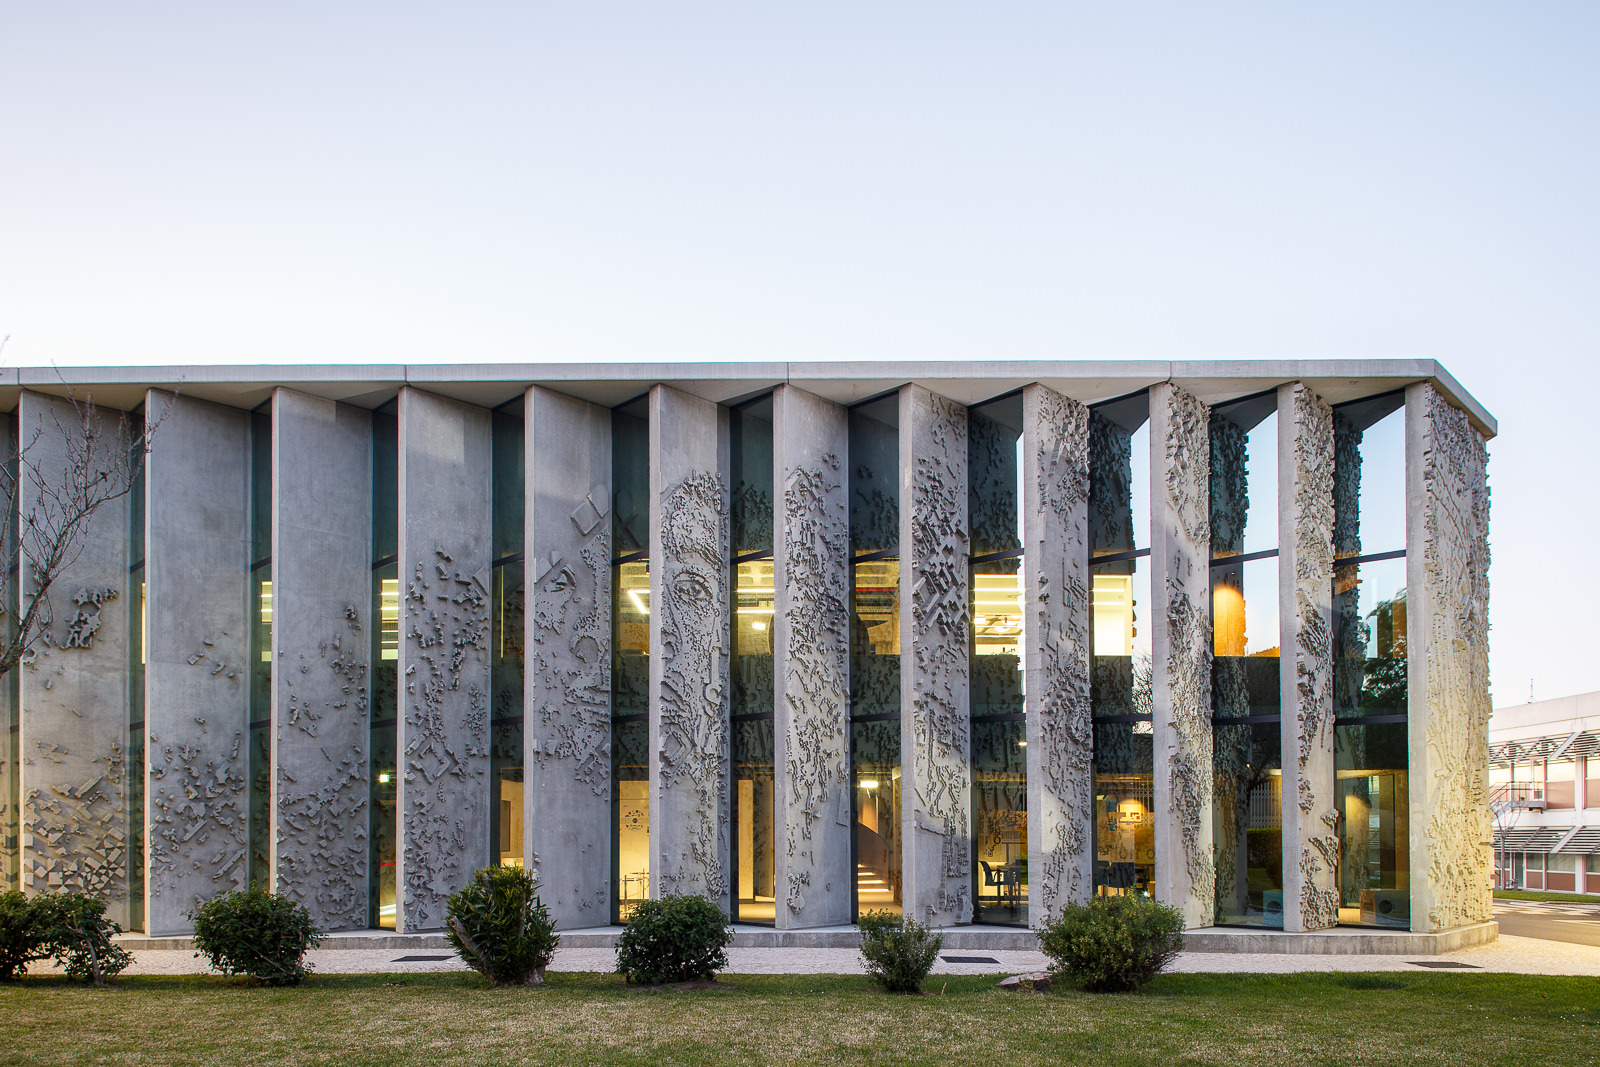  Edifício sede GS1 Portugal, intervenção de Vhils na fachada, Lisboa 